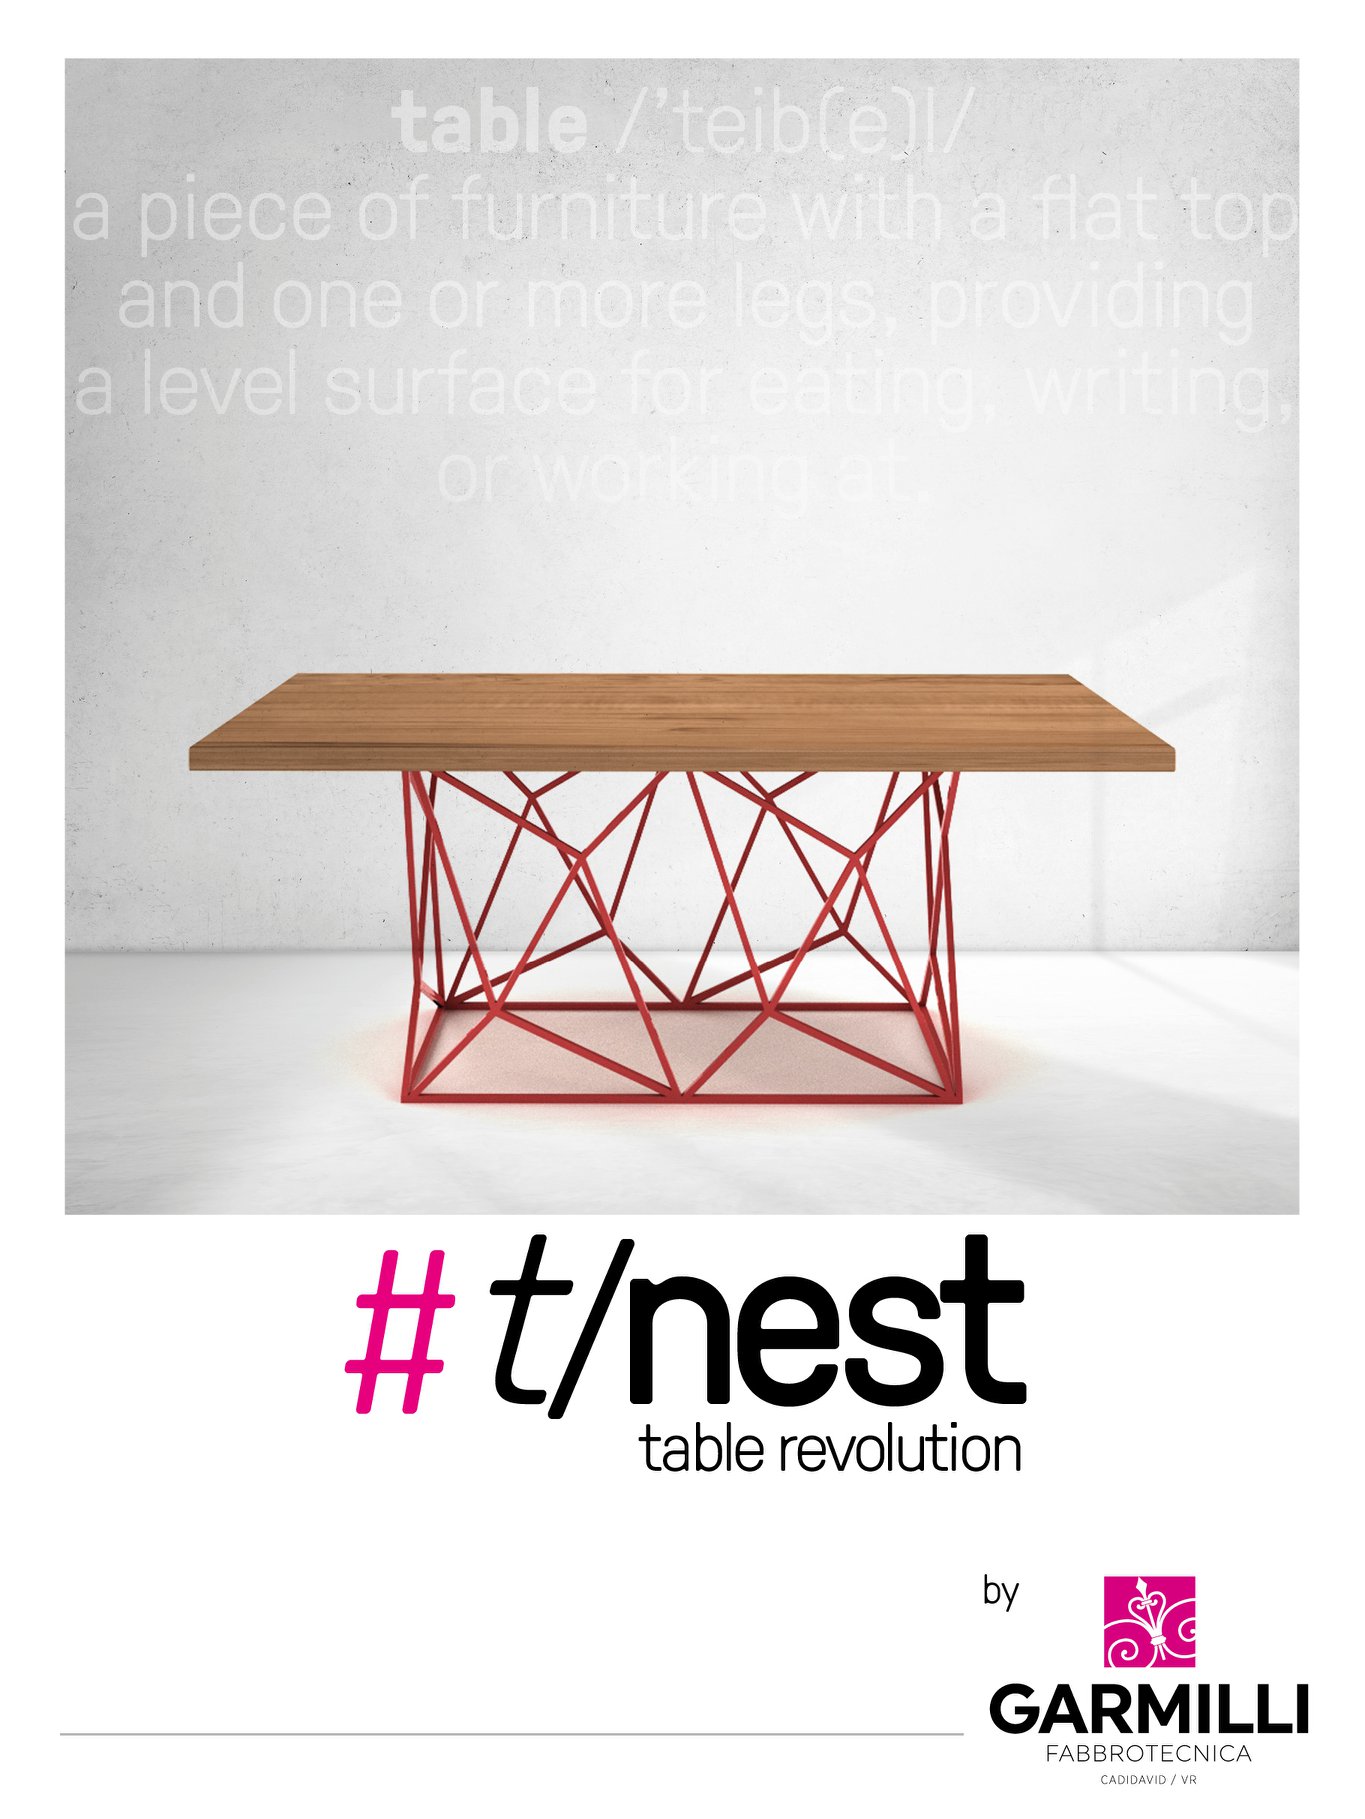 Mai Visto Un Tavolo Cosi Tnest Table Revolution Chiamaci Per.xxohdea4dface296df6c55d5e34c84f2ad50oe5e8a7046.jpeg